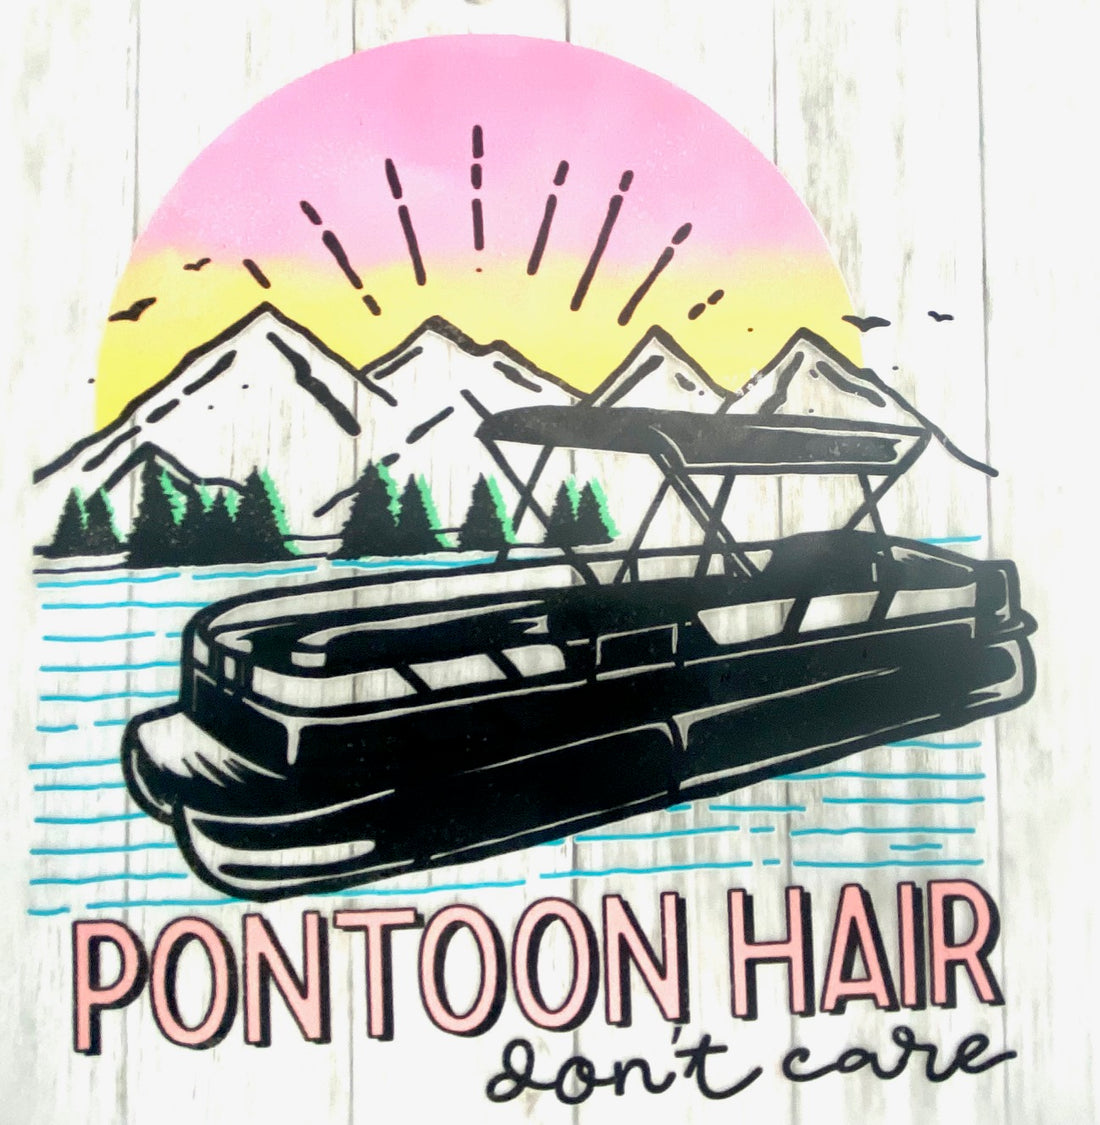 Pontoon Hair Don&